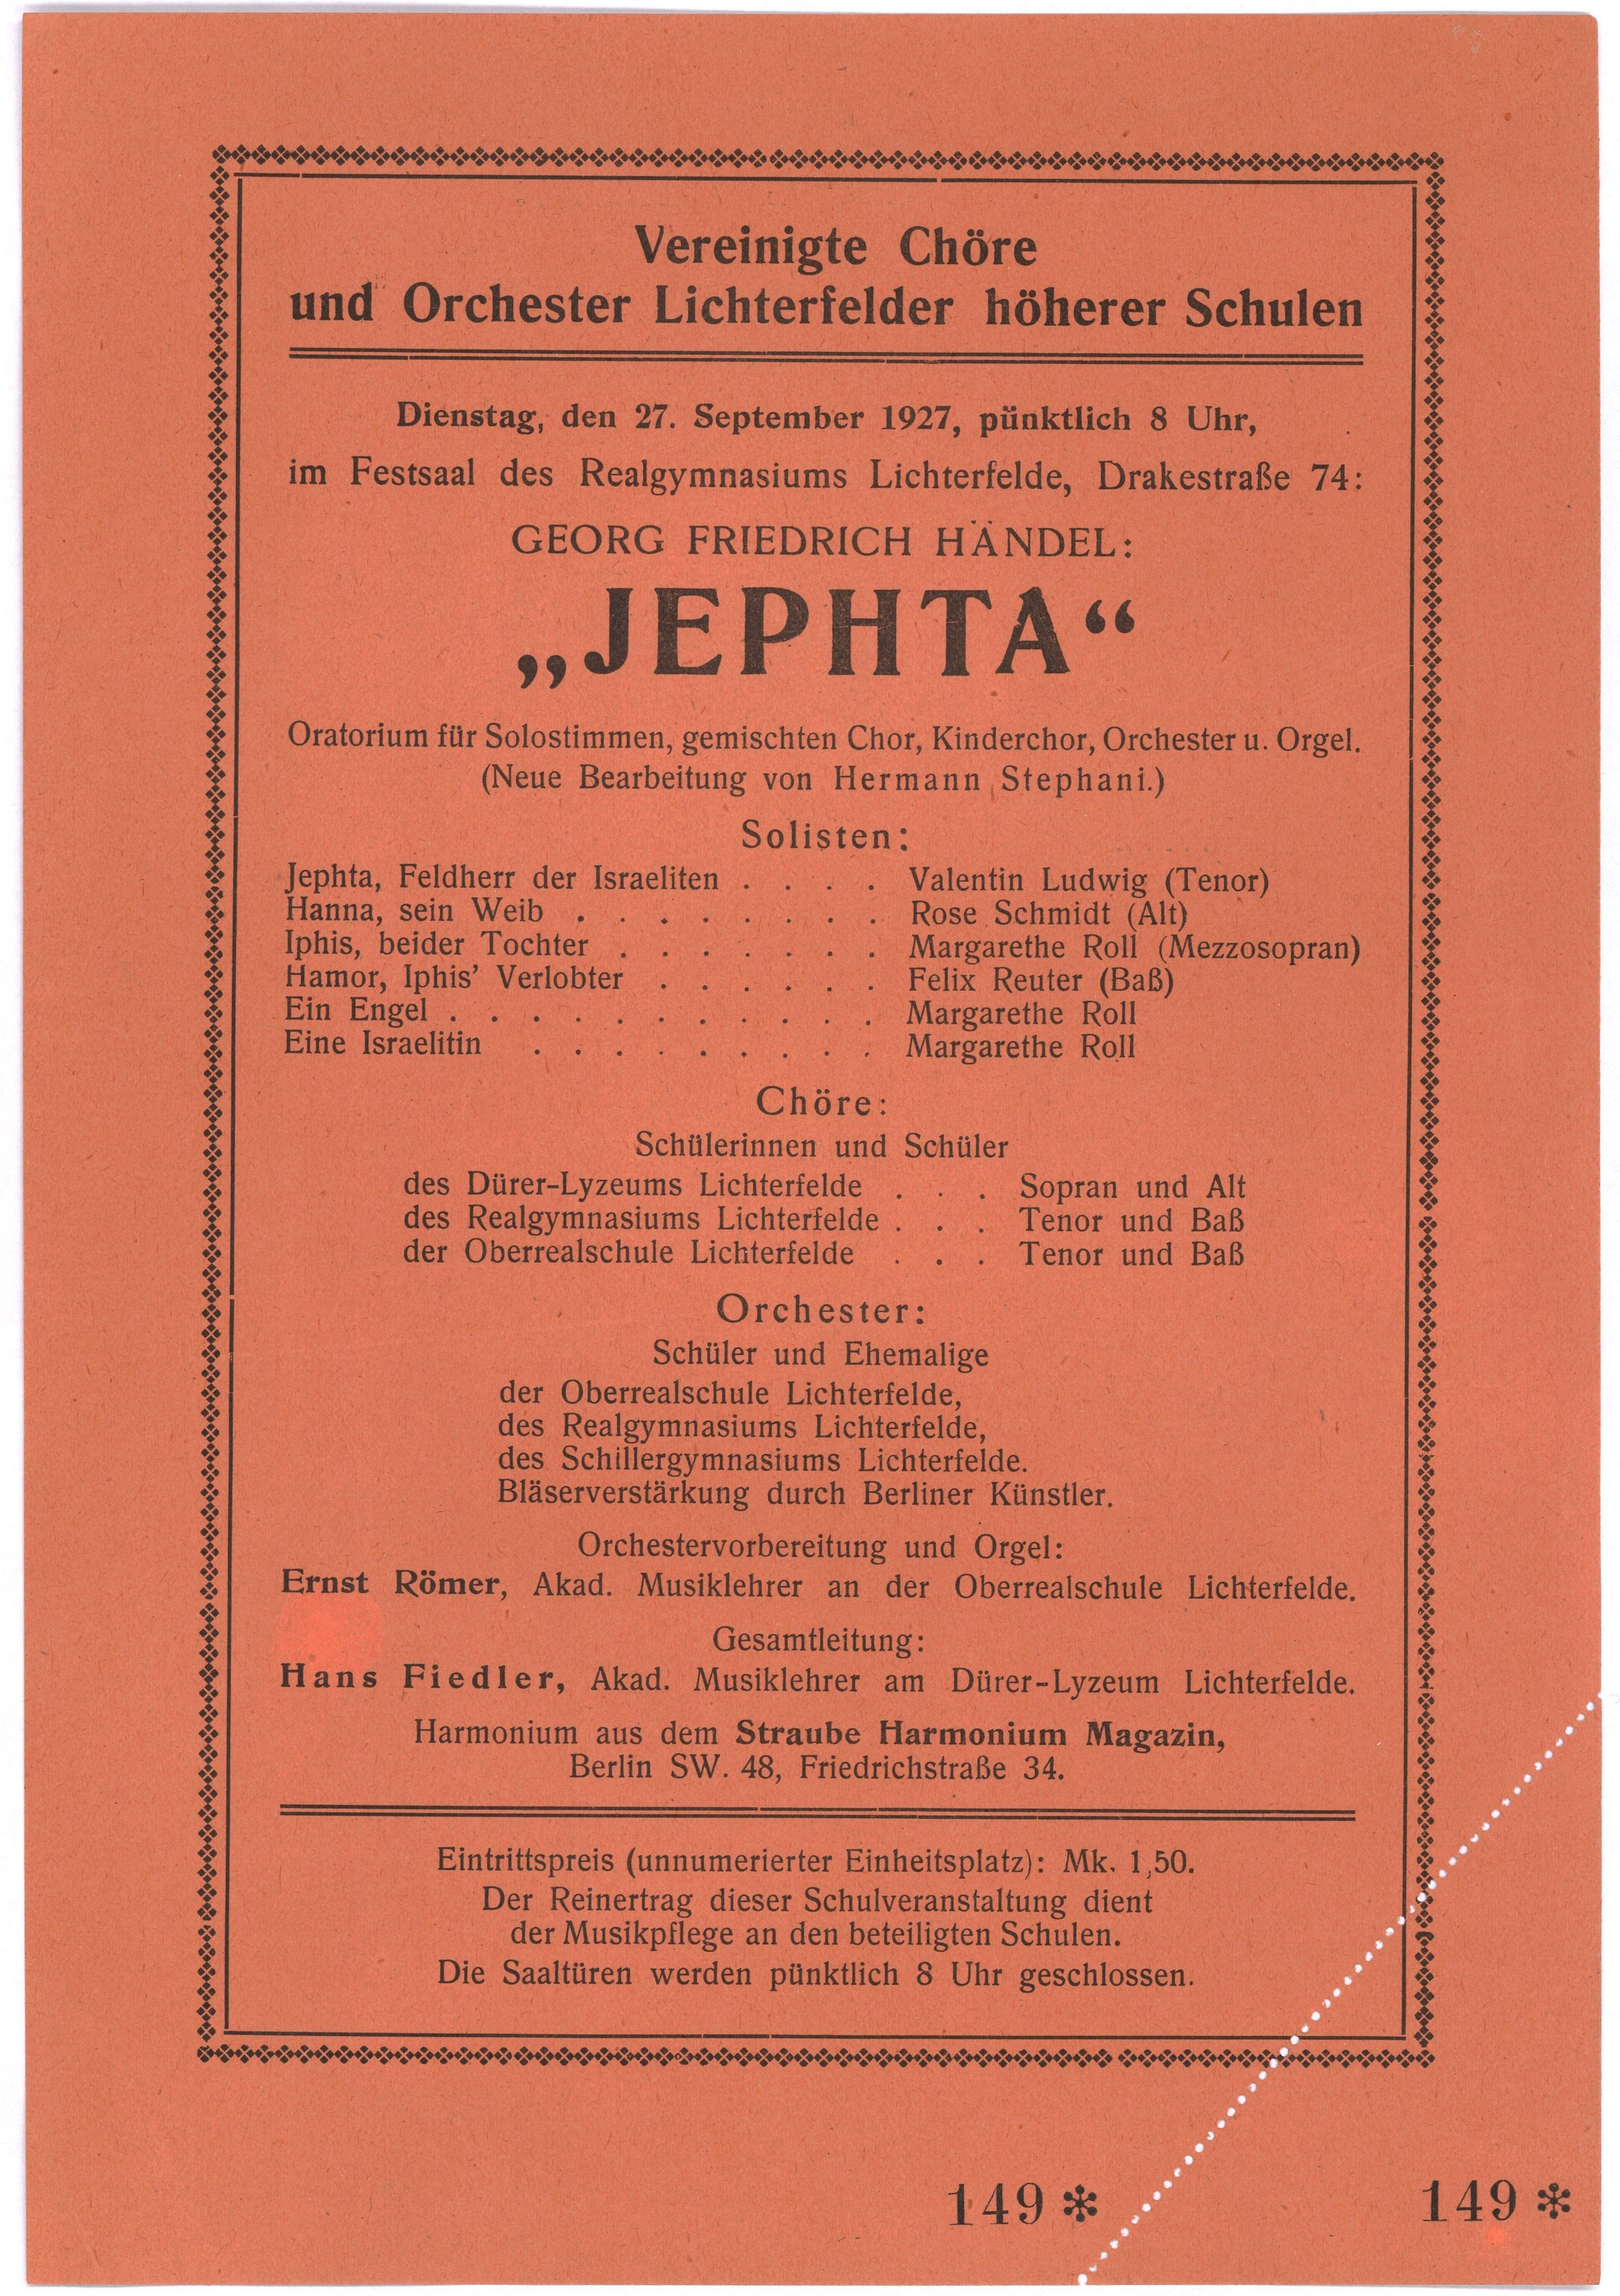 Konzertprogramm der Vereinigten Chöre und Orchester Lichterfelder höherer Schulen für die Aufführung von "Jephta" (Händel) am 27. September 1927 (Landesgeschichtliche Vereinigung für die Mark Brandenburg e.V., Archiv CC BY)